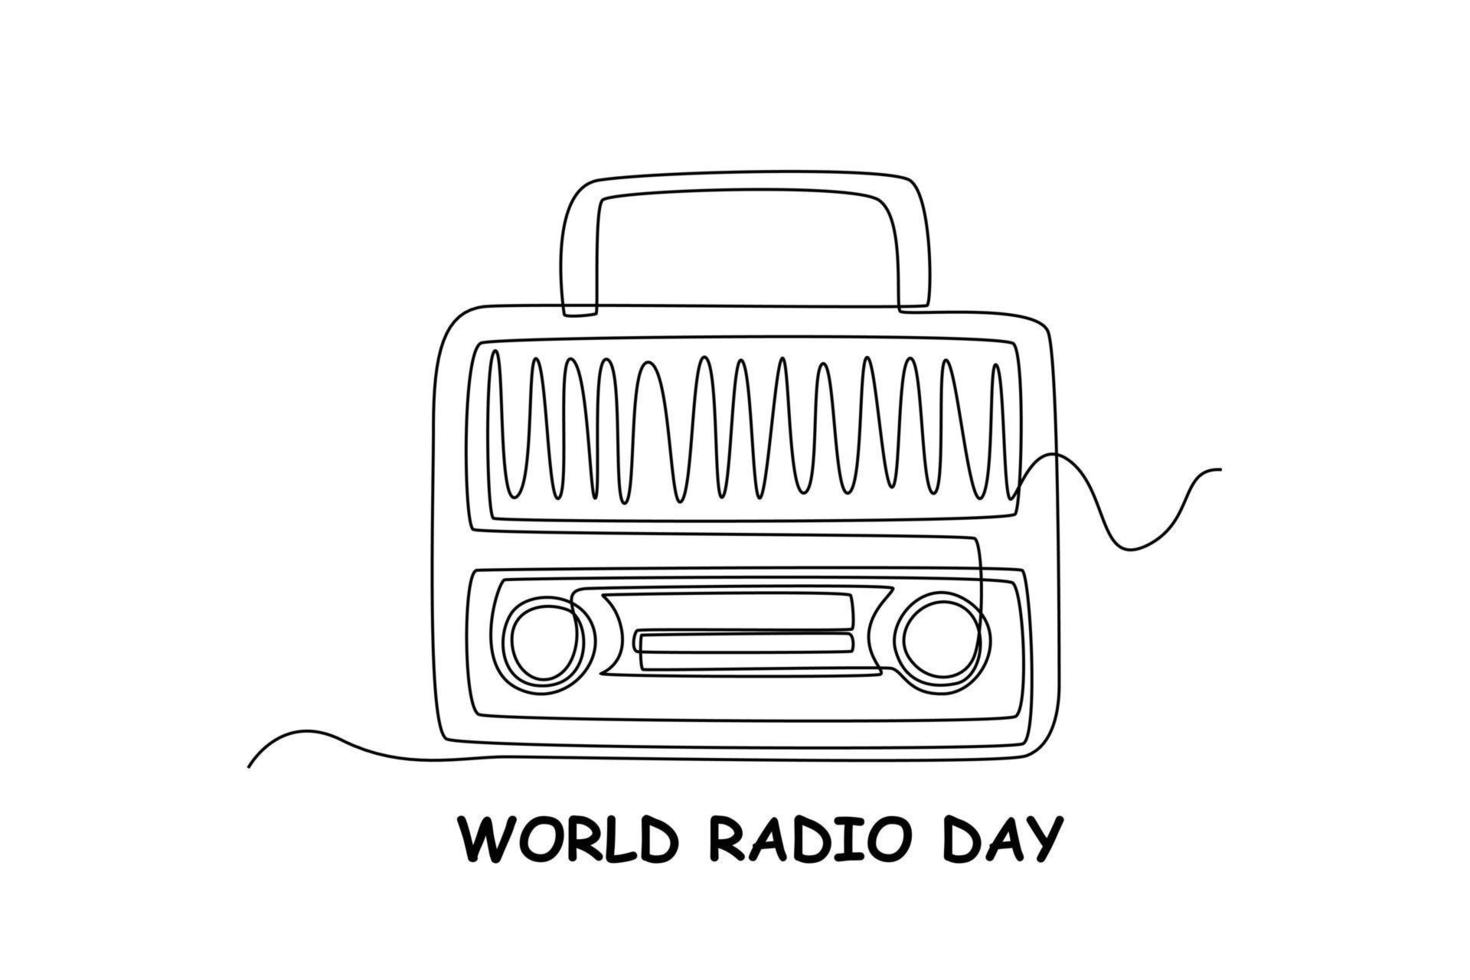 radio de estilo retro de dibujo de una sola línea. concepto del día mundial de la radio. ilustración de vector gráfico de diseño de dibujo de línea continua.